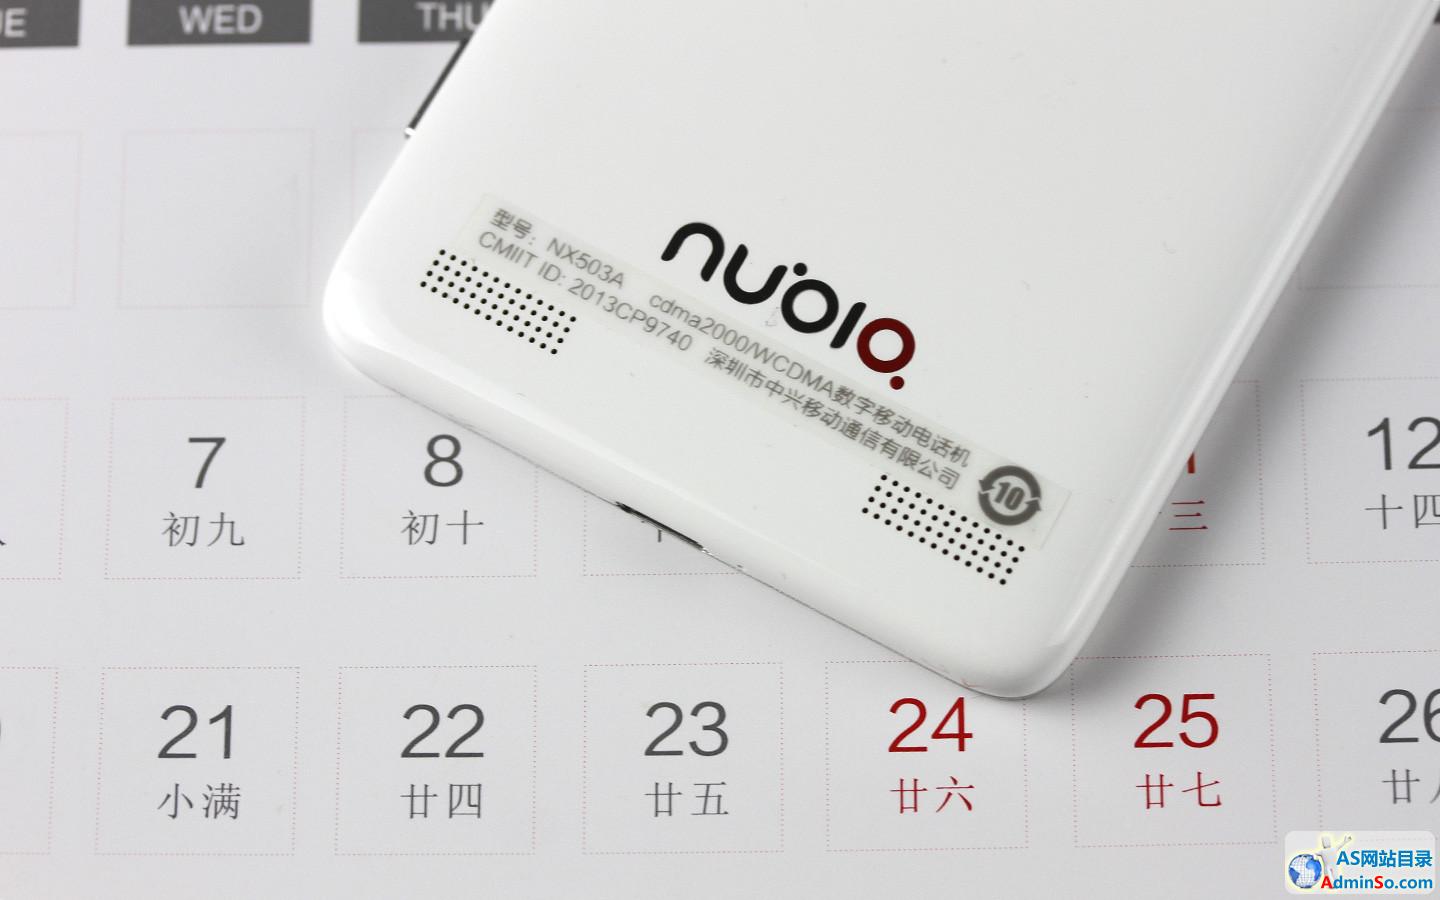 骁龙800全网3G光学防抖 nubia Z5Sn图赏 